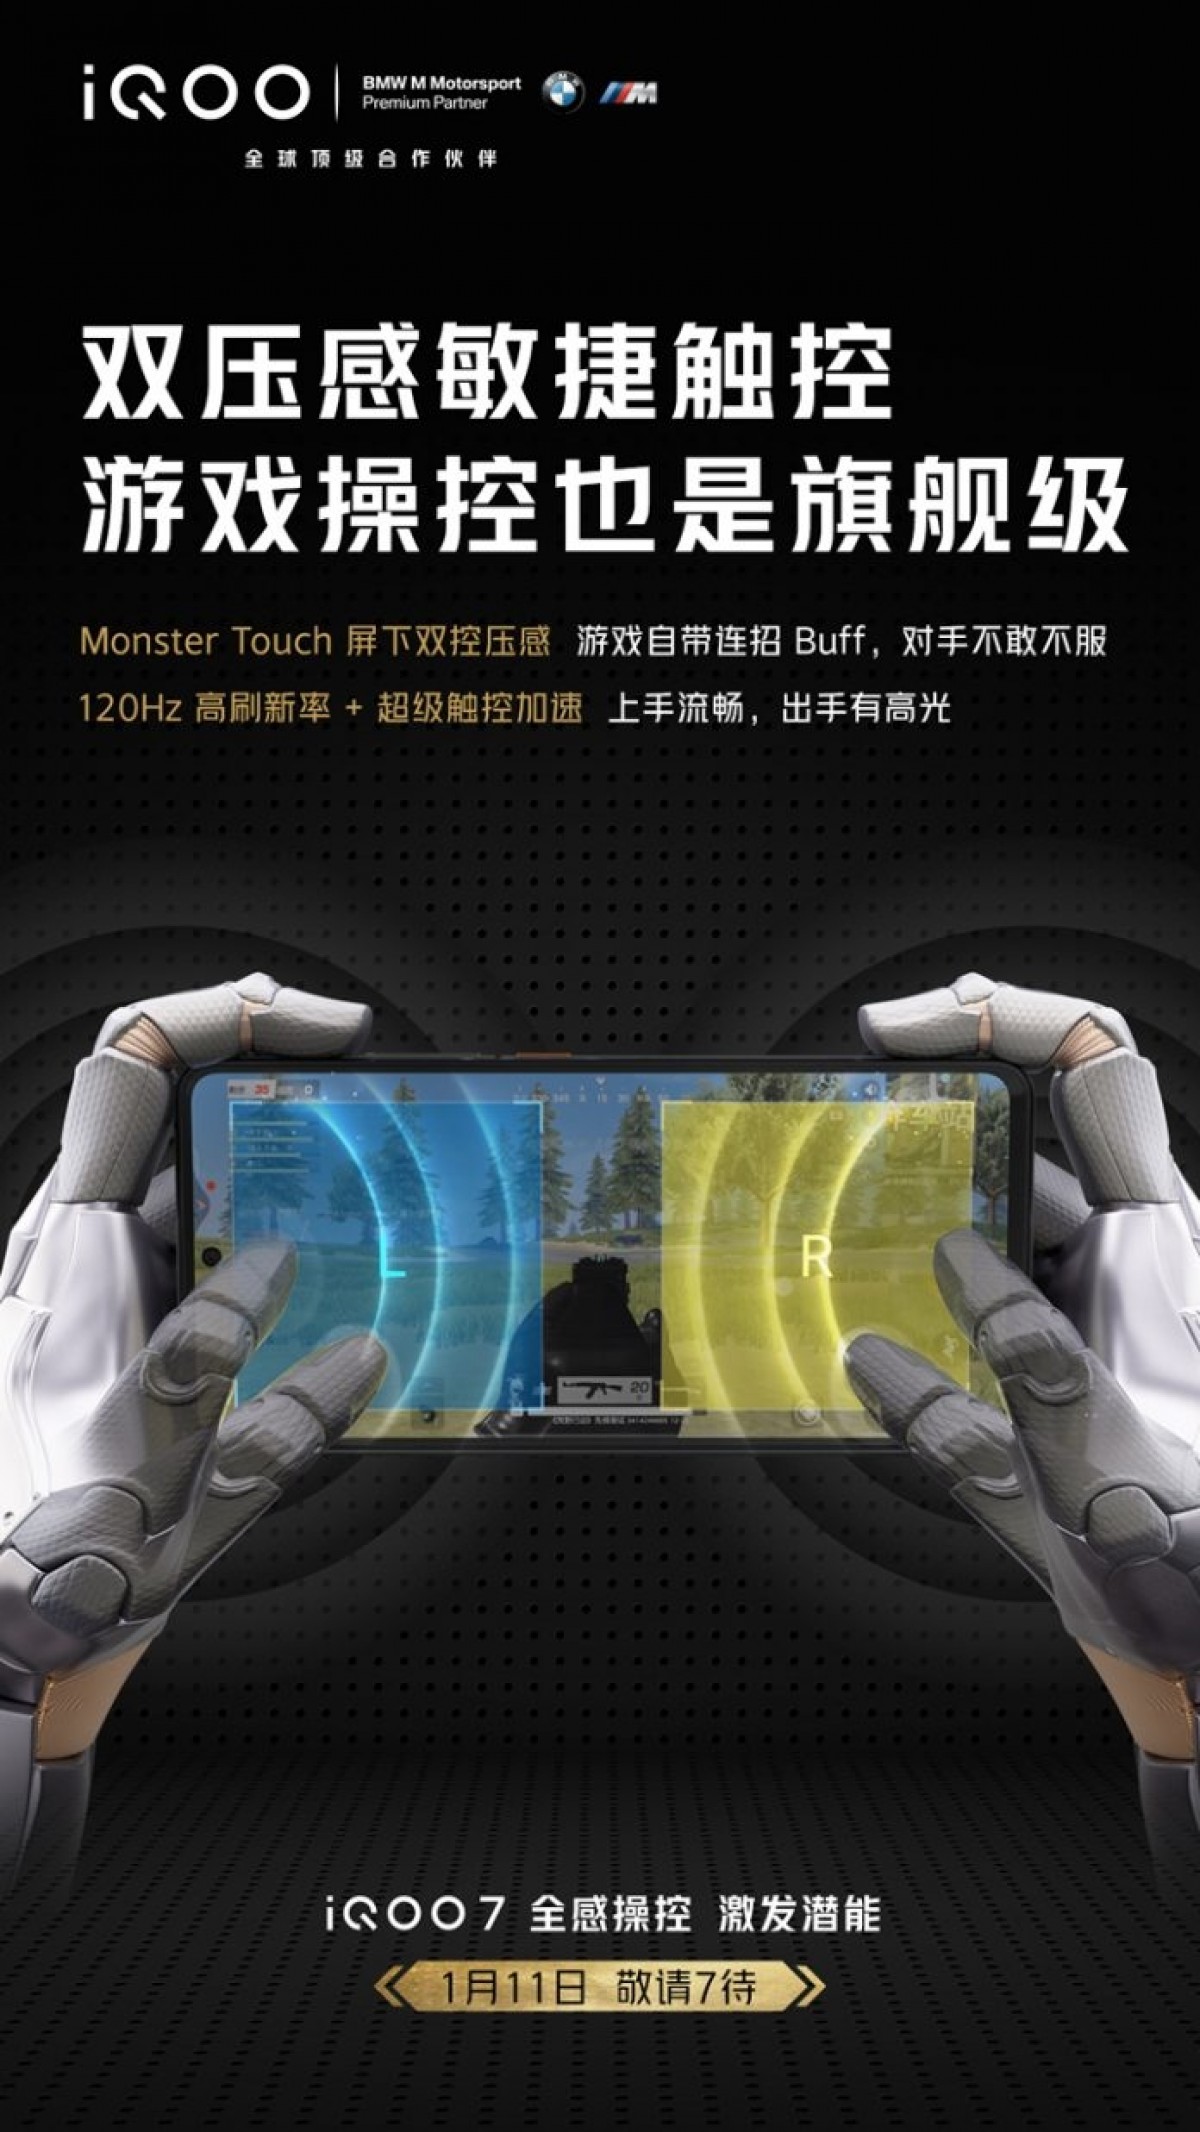 vivo iQOO 7 will come with a pressure-sensitive screen, 120 Hz refresh rate